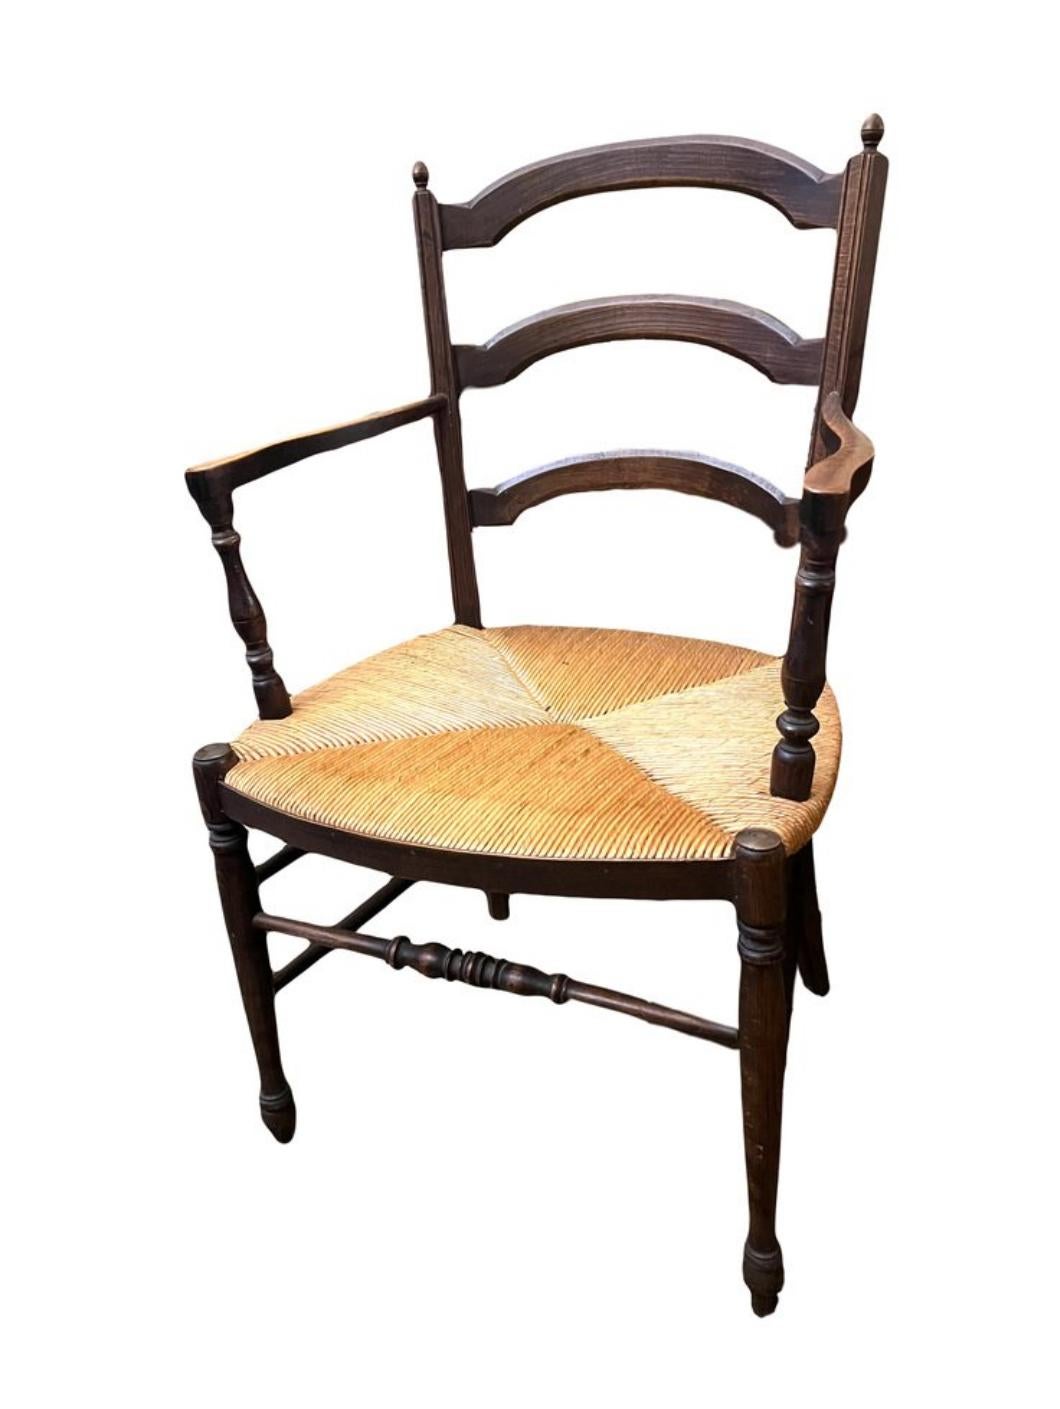 Découvrez l'élégance rustique avec cette paire exceptionnelle de fauteuils de ferme français du XIXe siècle, fabriqués en bois de hêtre et provenant de la prestigieuse région viticole de Bourgogne. Ces sièges dégagent non seulement un charme